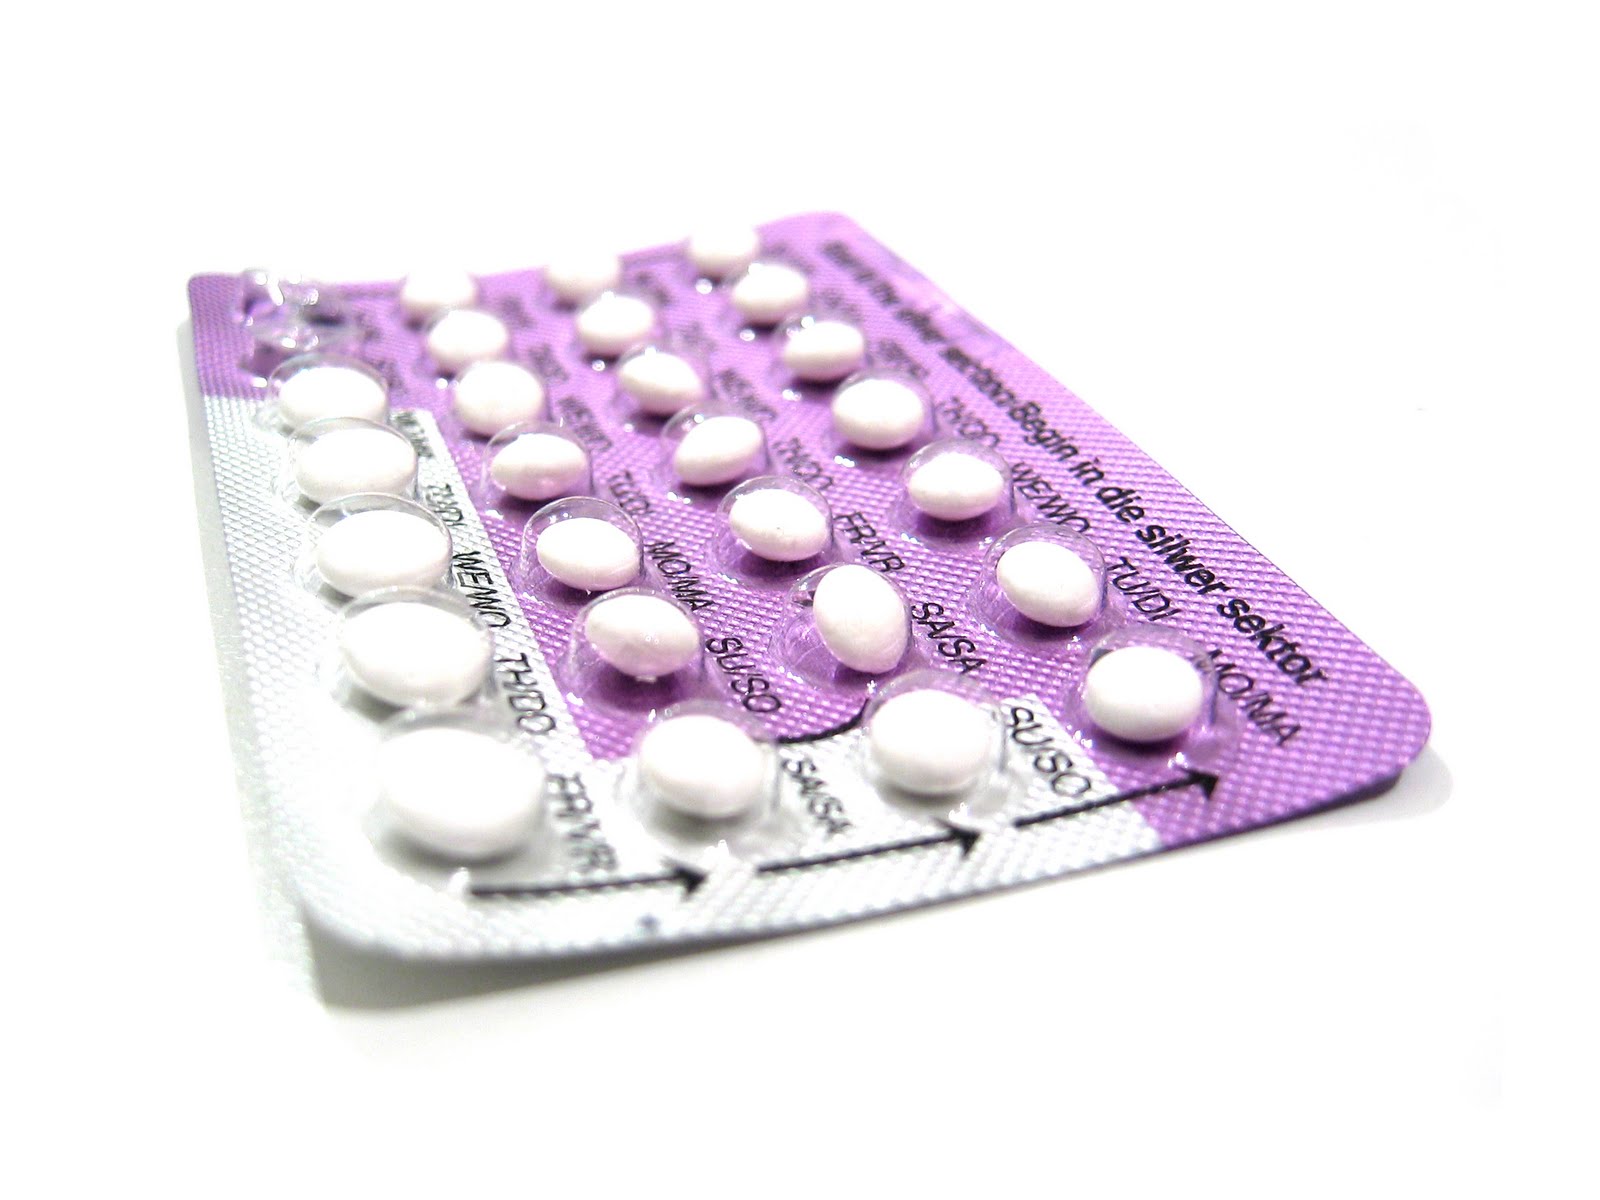 Tutto quello che c'è da sapere sulla pillola anticoncezionale